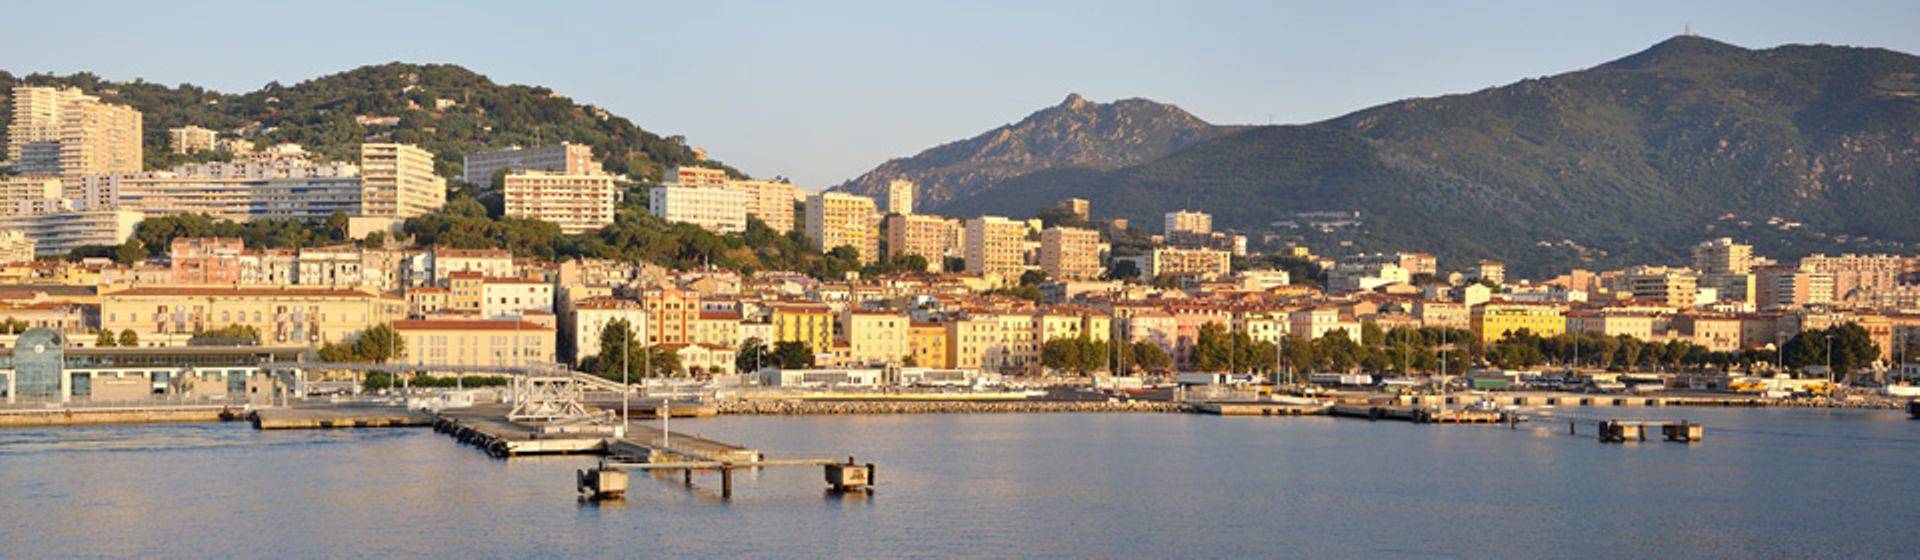 Holidays to Corsica Image